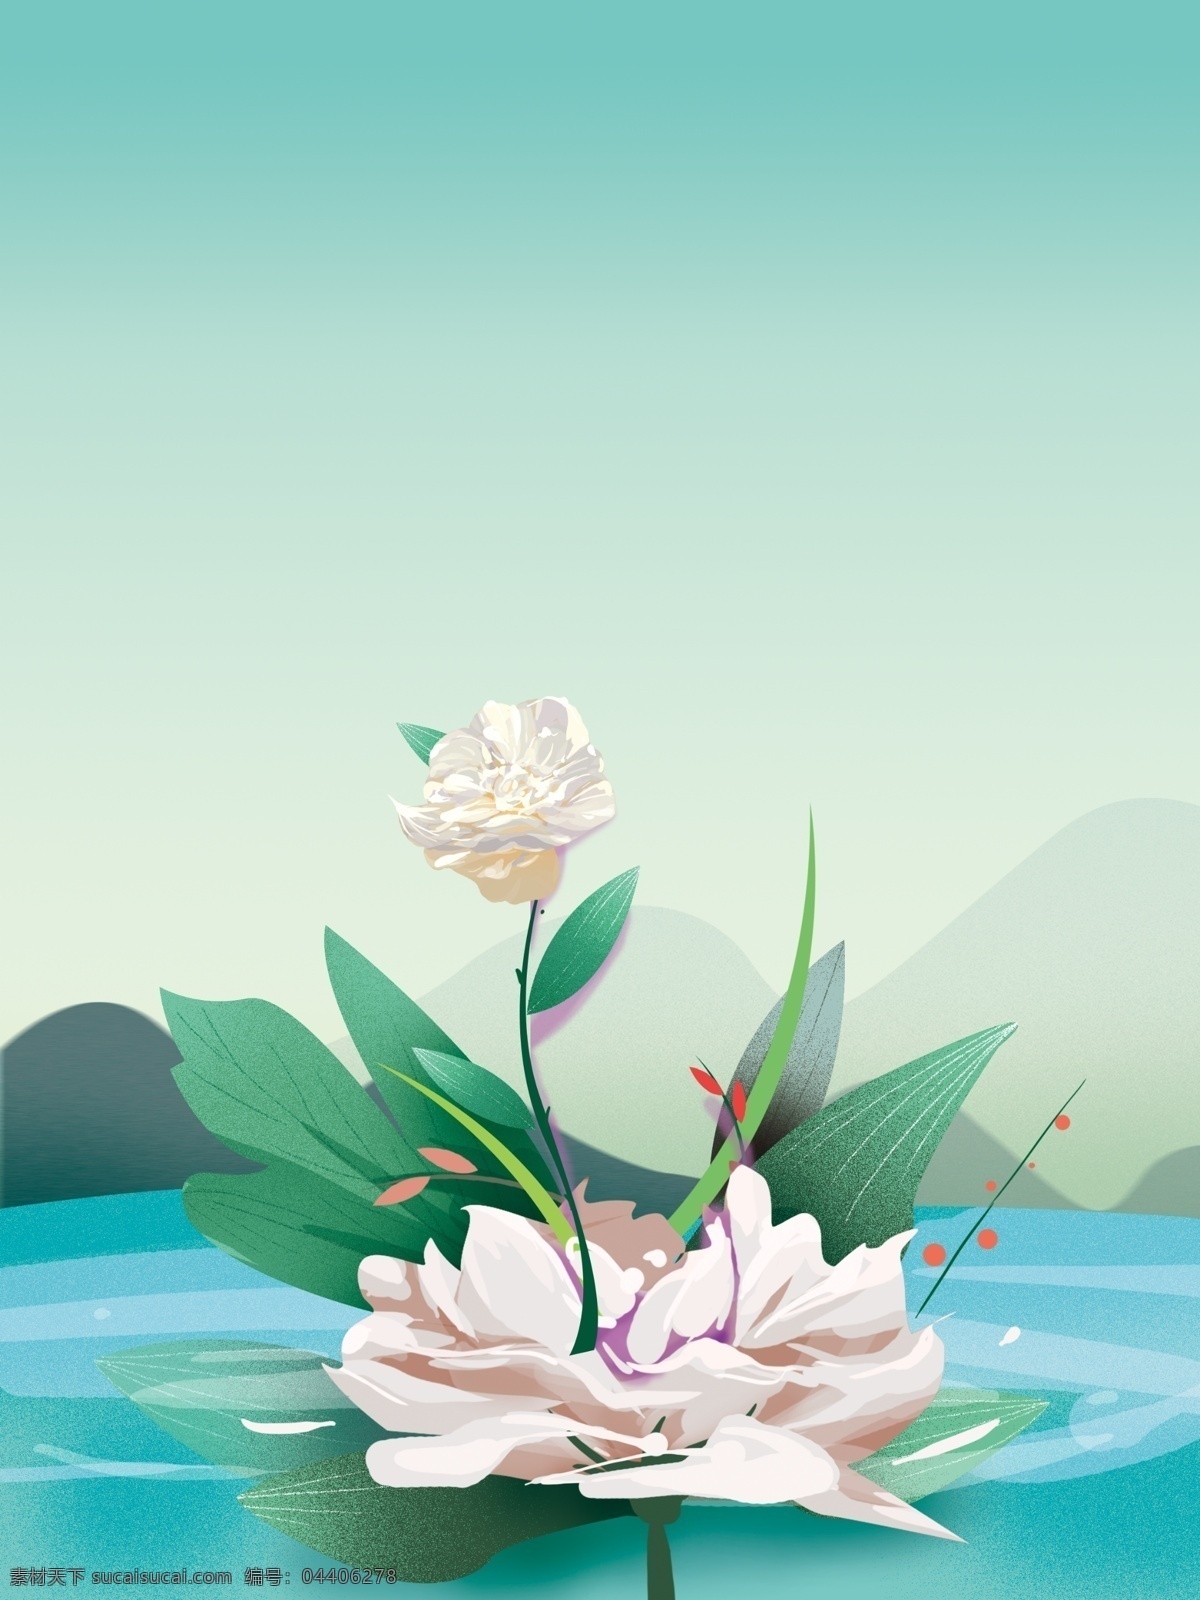 唯美 小 清晰 植物 花卉 背景 广告背景 背景素材 植物背景 psd背景 花卉背景 通用背景 卡通背景 河边